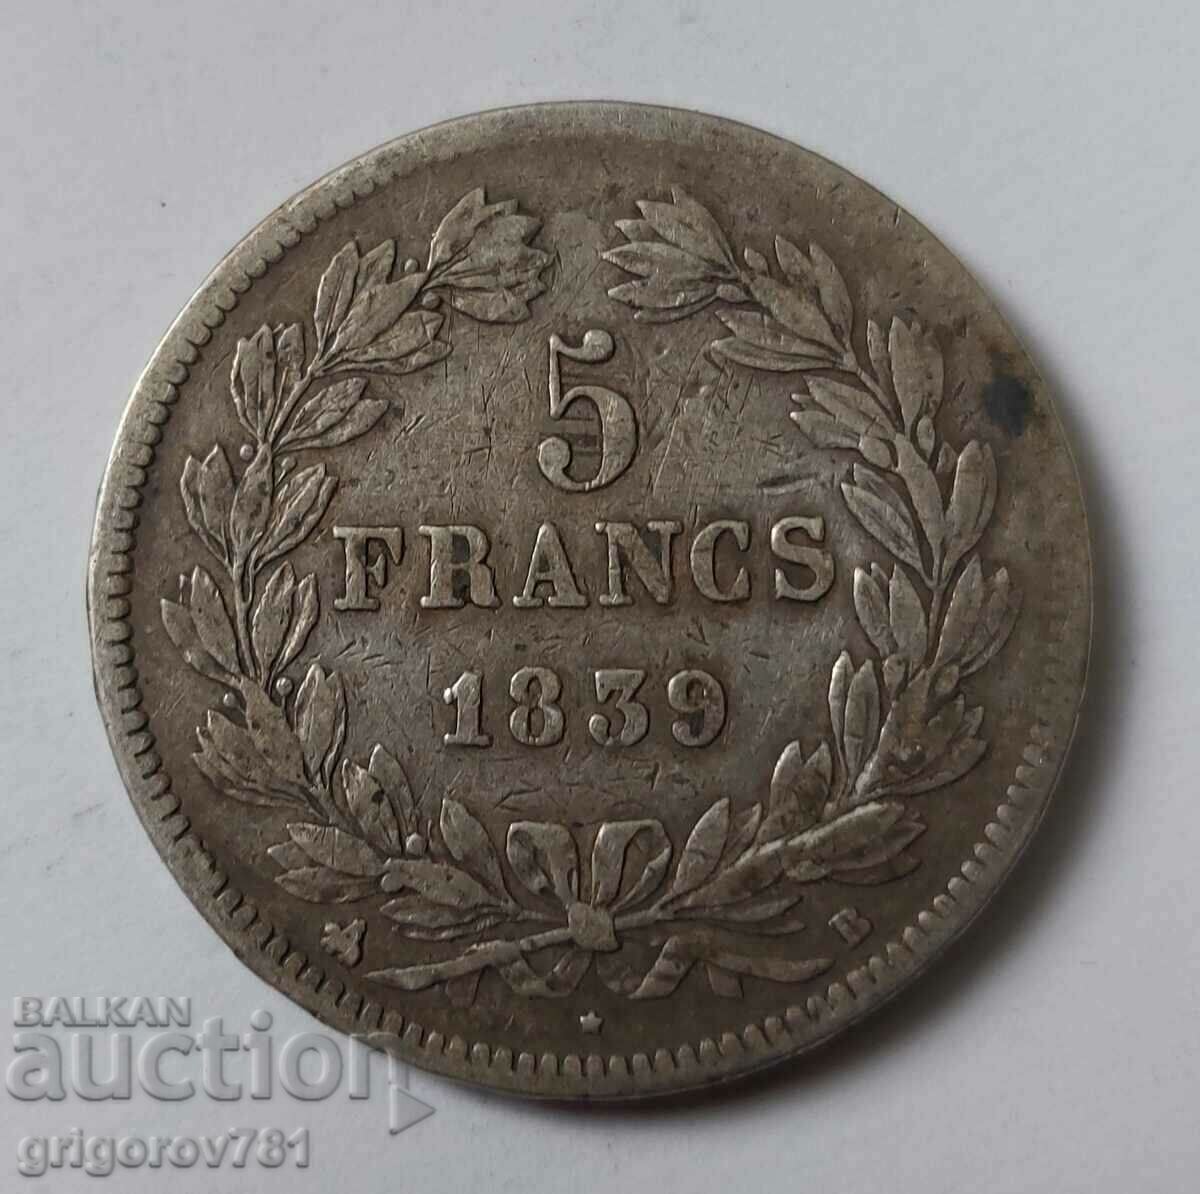 5 Franci Argint Franta 1839 B - Moneda de argint #119